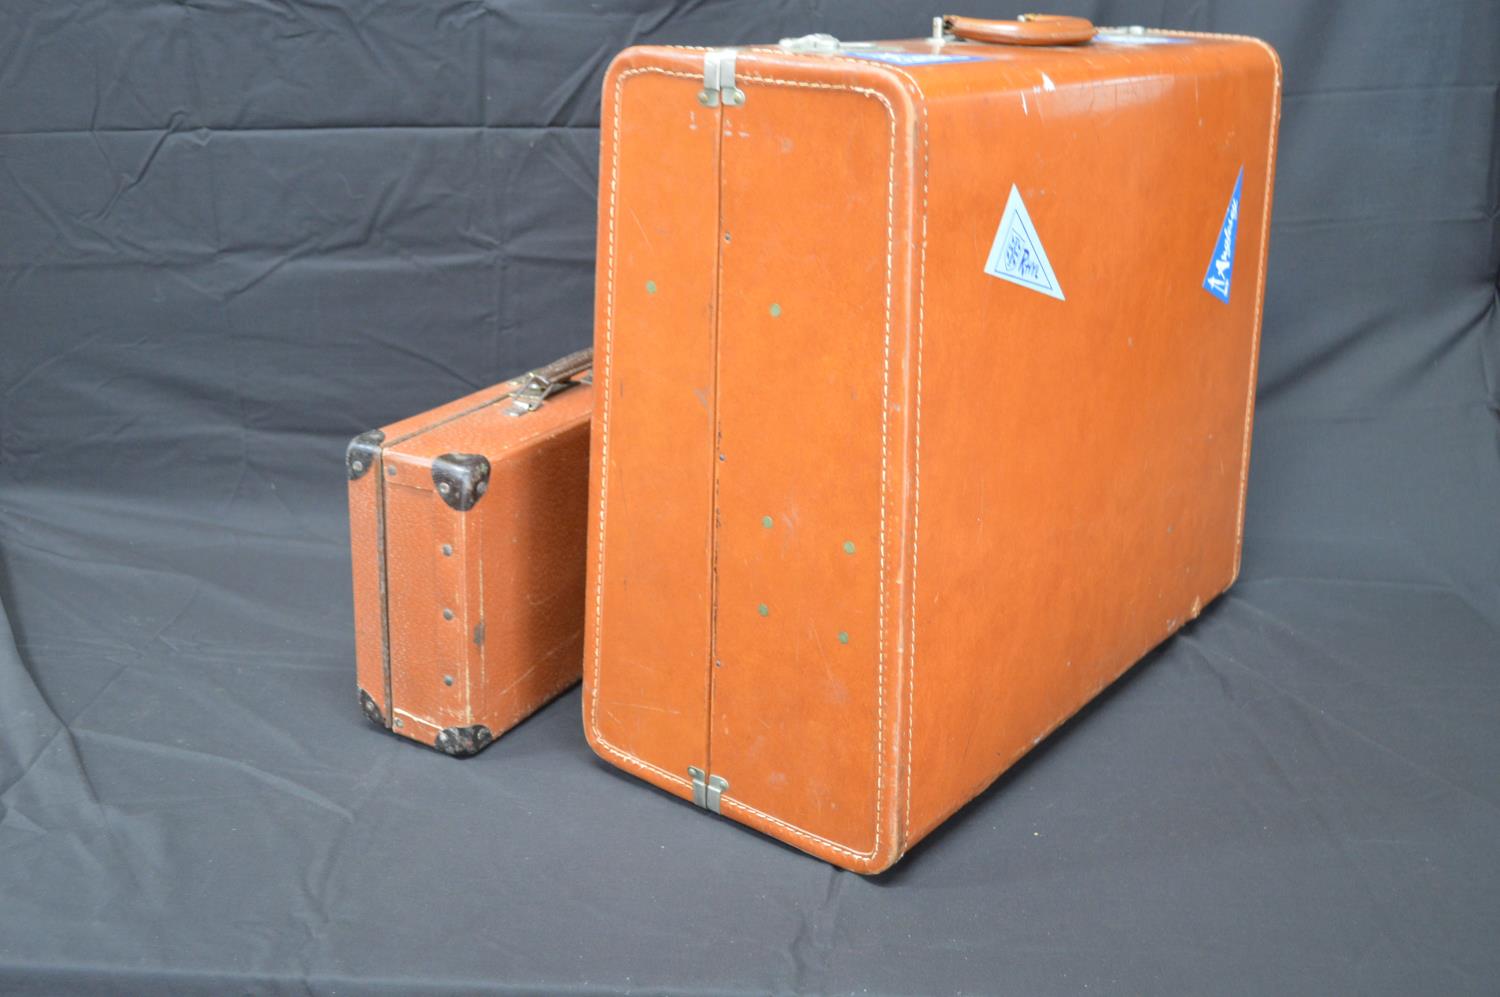 Two vintage suitcases - 57cm x 34.5cm wide Please note descriptions are not condition reports, - Bild 4 aus 4